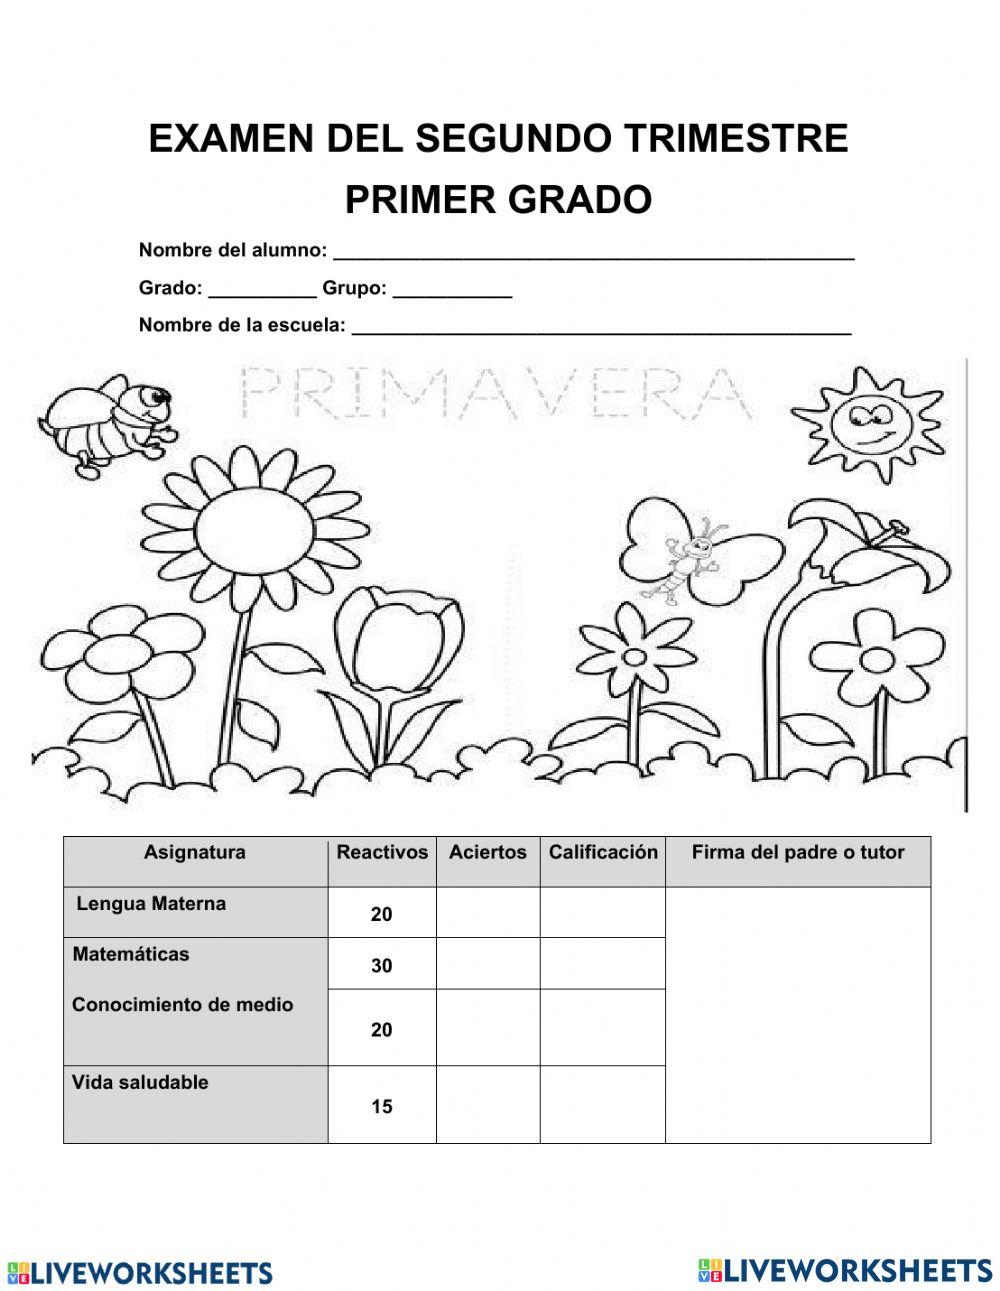 Pruebas superate castellano20203 worksheet